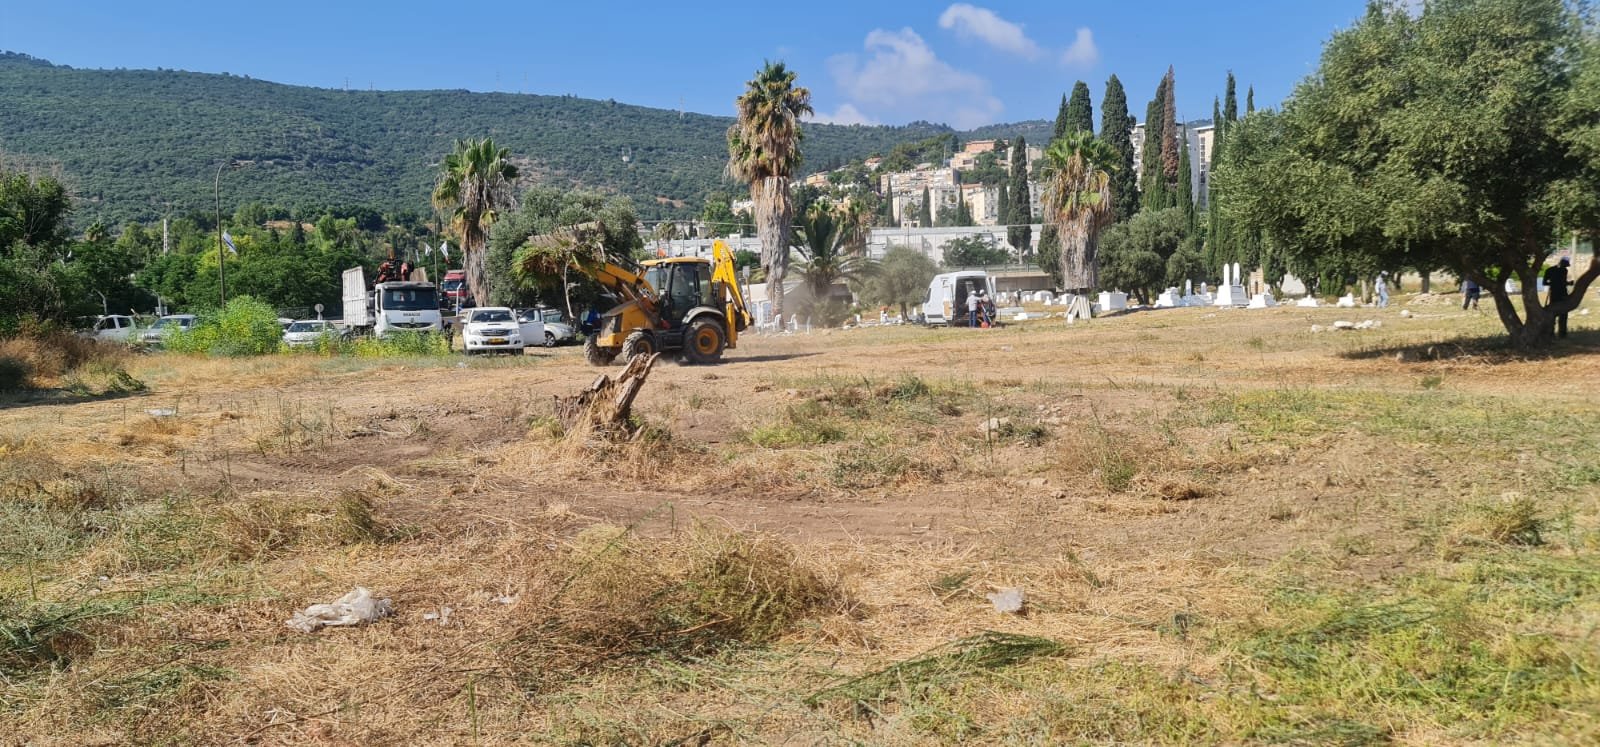 لجنة "أوقافُنا" بالتعاون مع جهات محلية تنظم يوم عمل تطوعي لتنظيف مقبرة القسام-حيفا-1